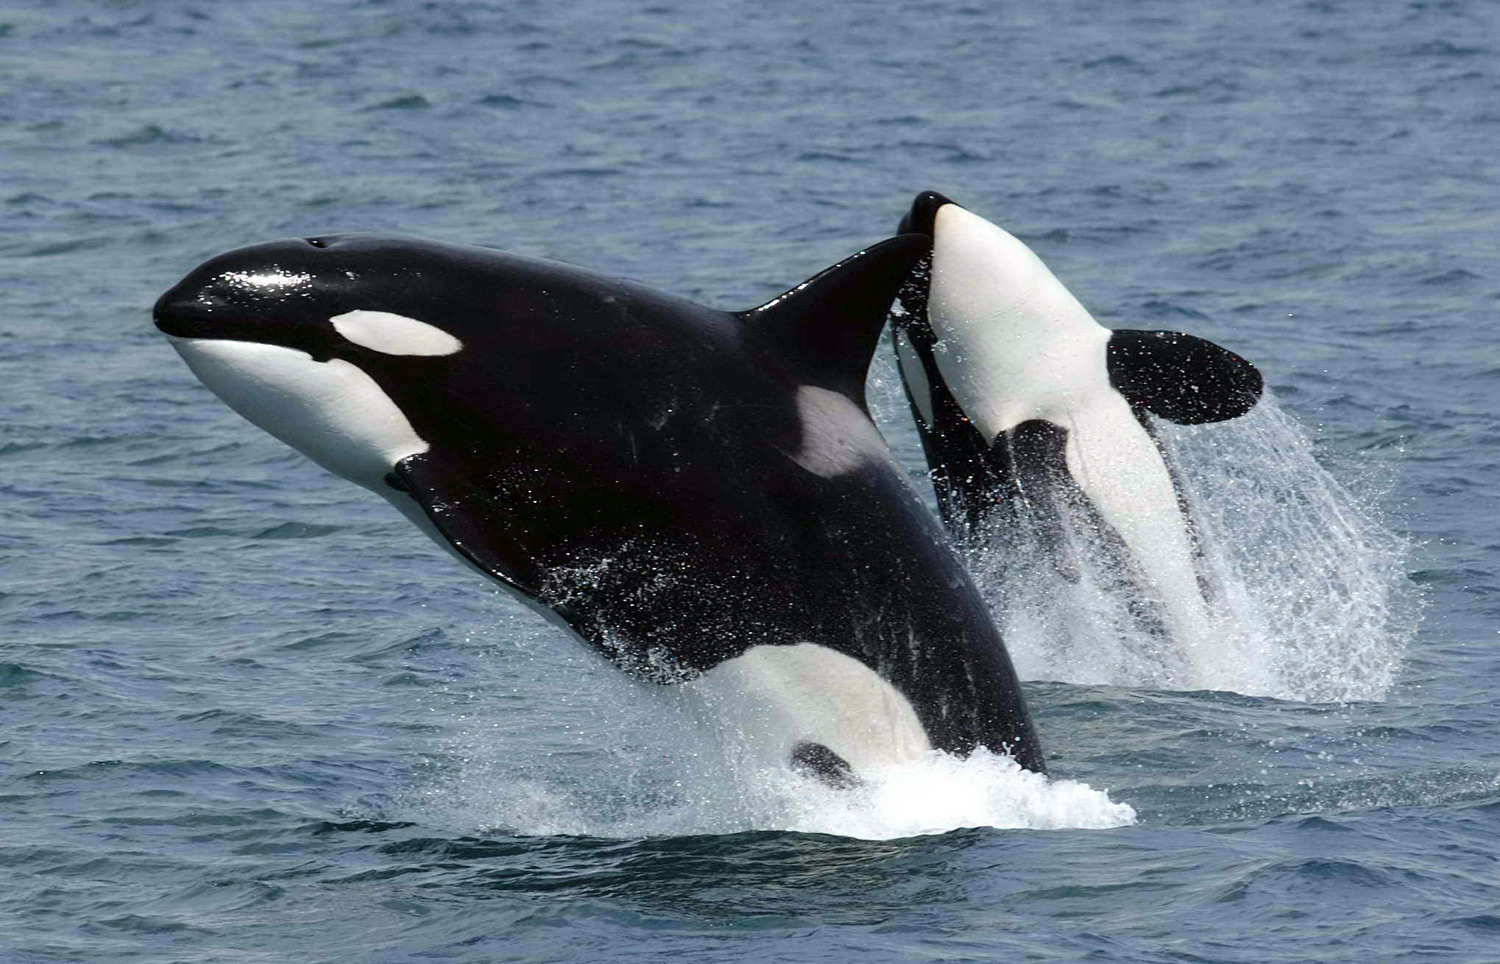 Where do orcas live?